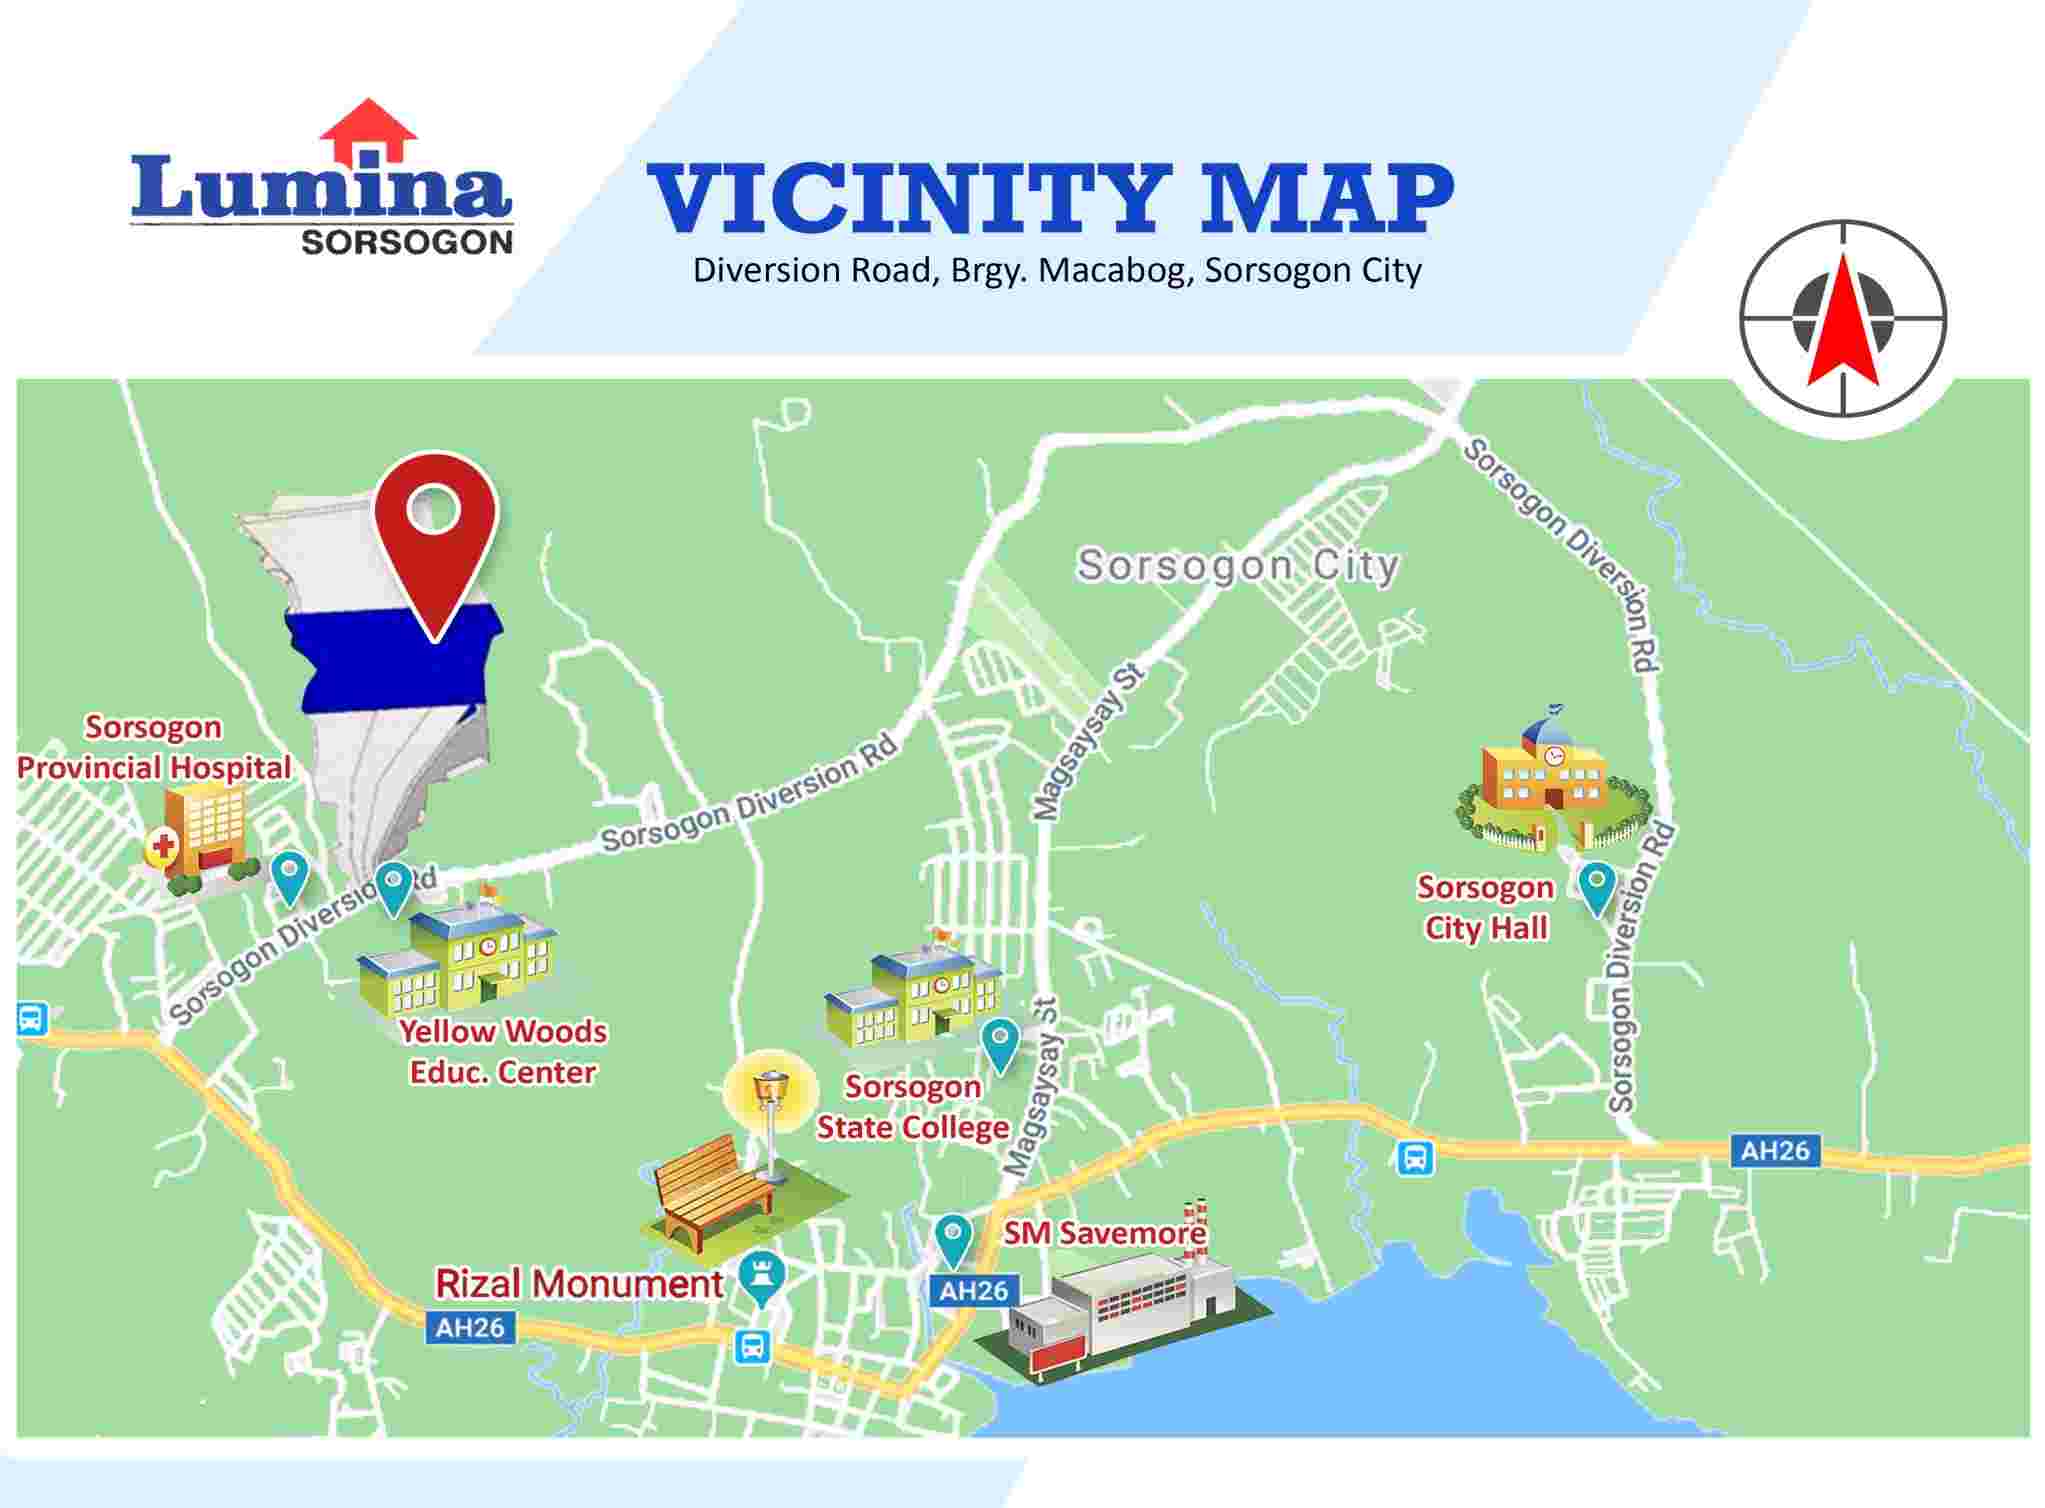 Vicinity-Map-1636000300.jpeg